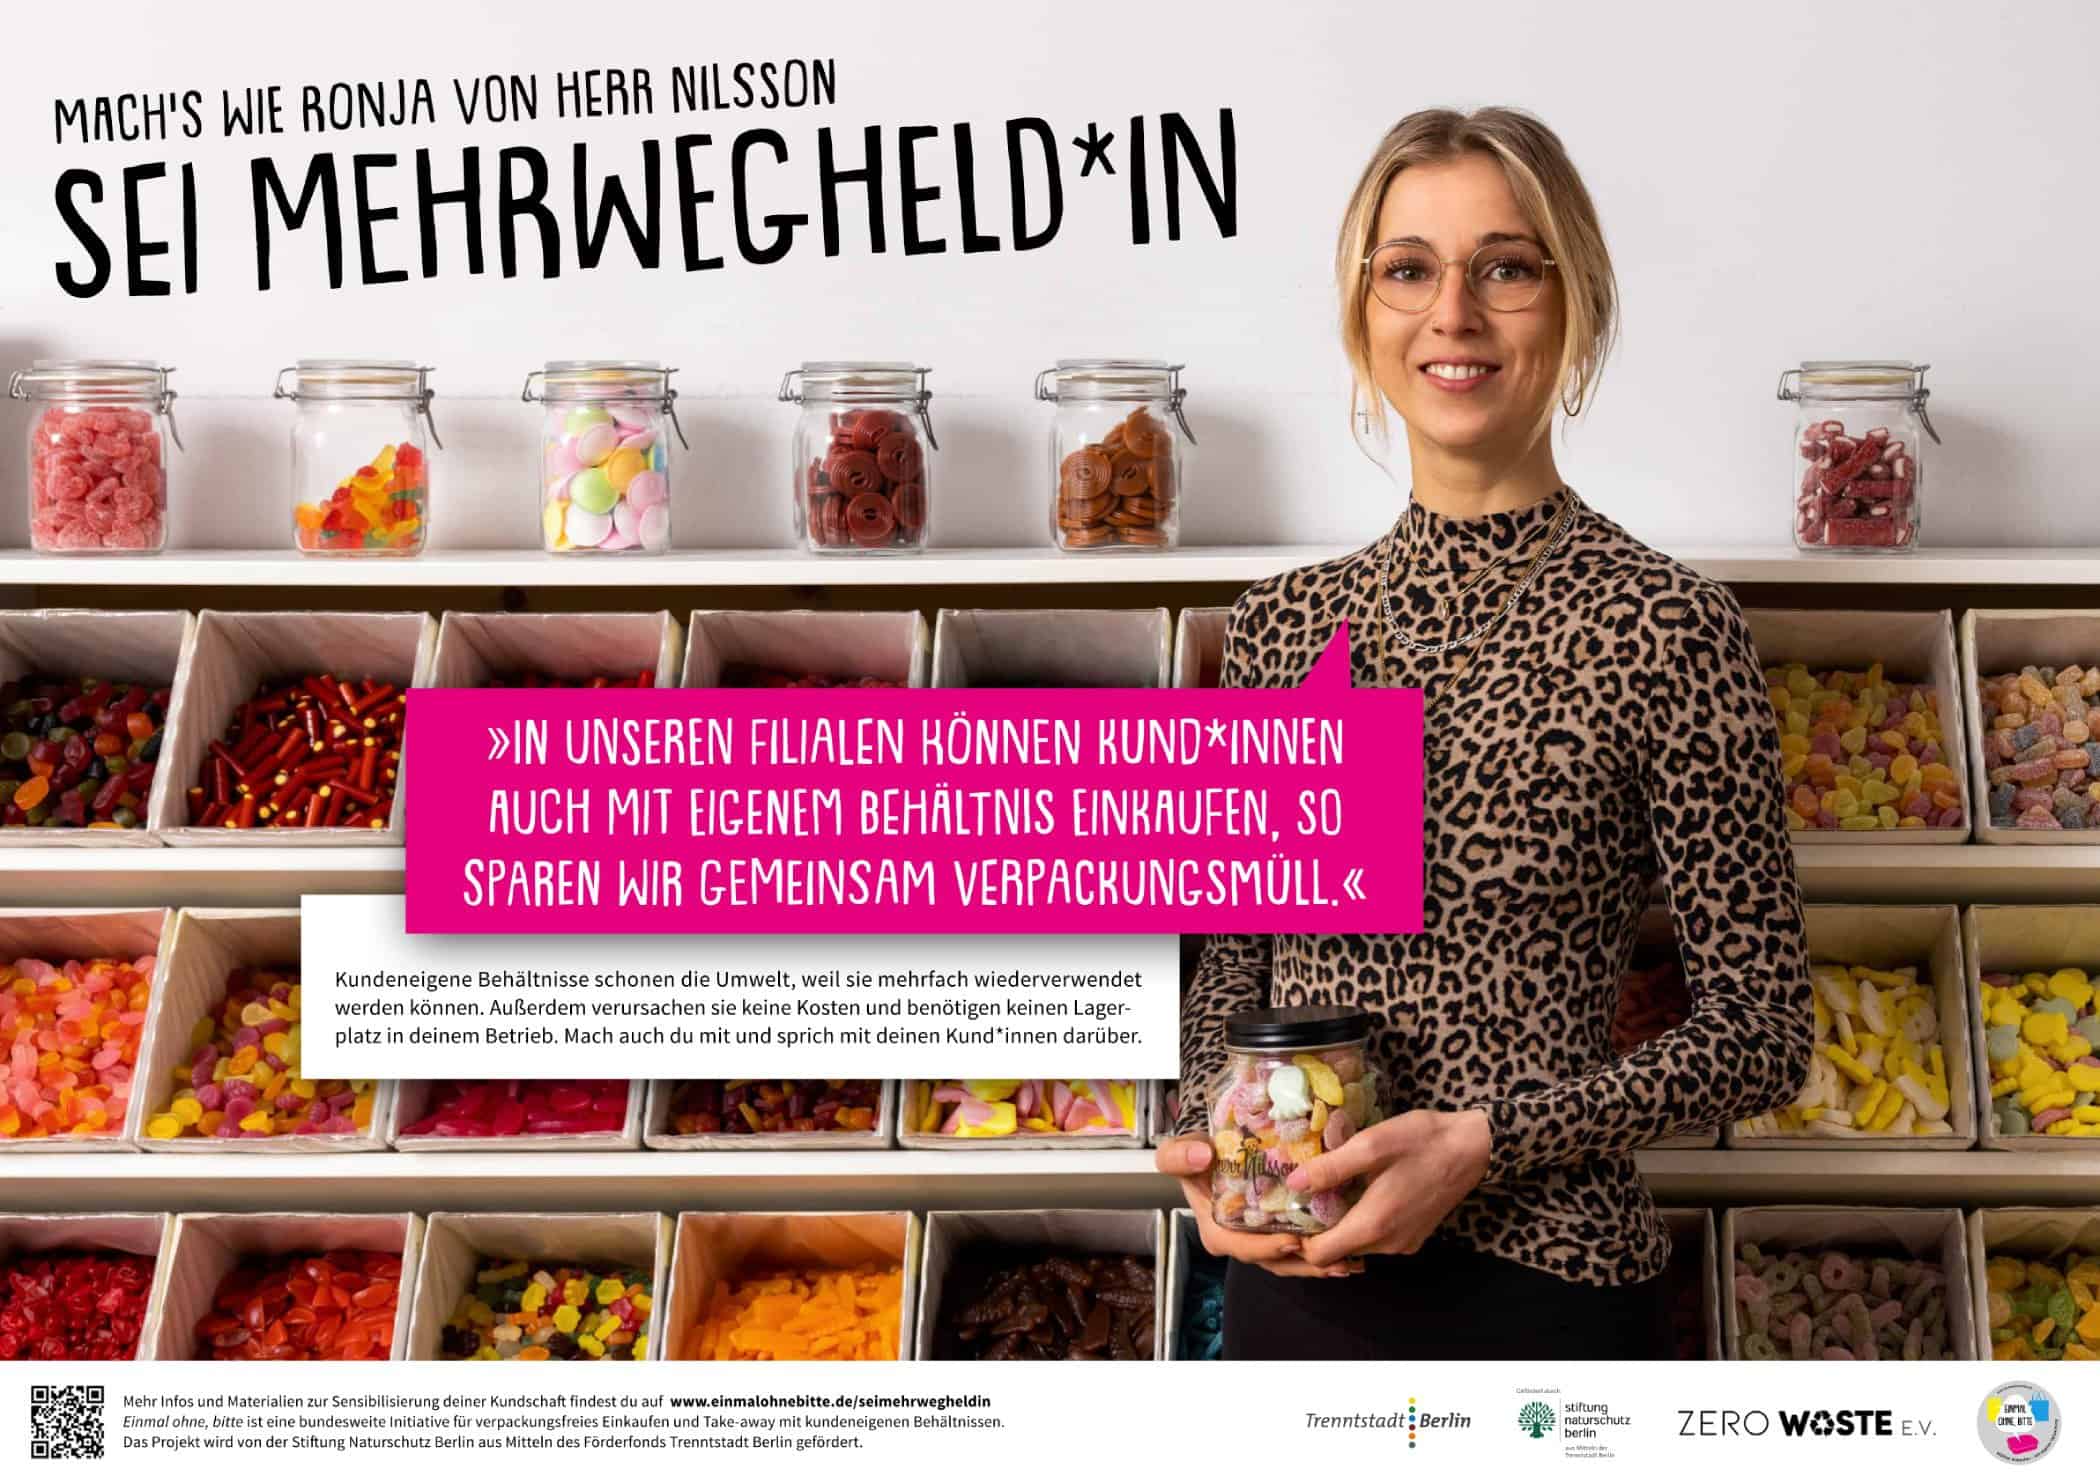 EOB mehrwegheldin hrnilsson - management, gastronomie, food-nomyblog Mehrwegheld*innen aus der Berliner Gastronomie für Kampagne gesucht!